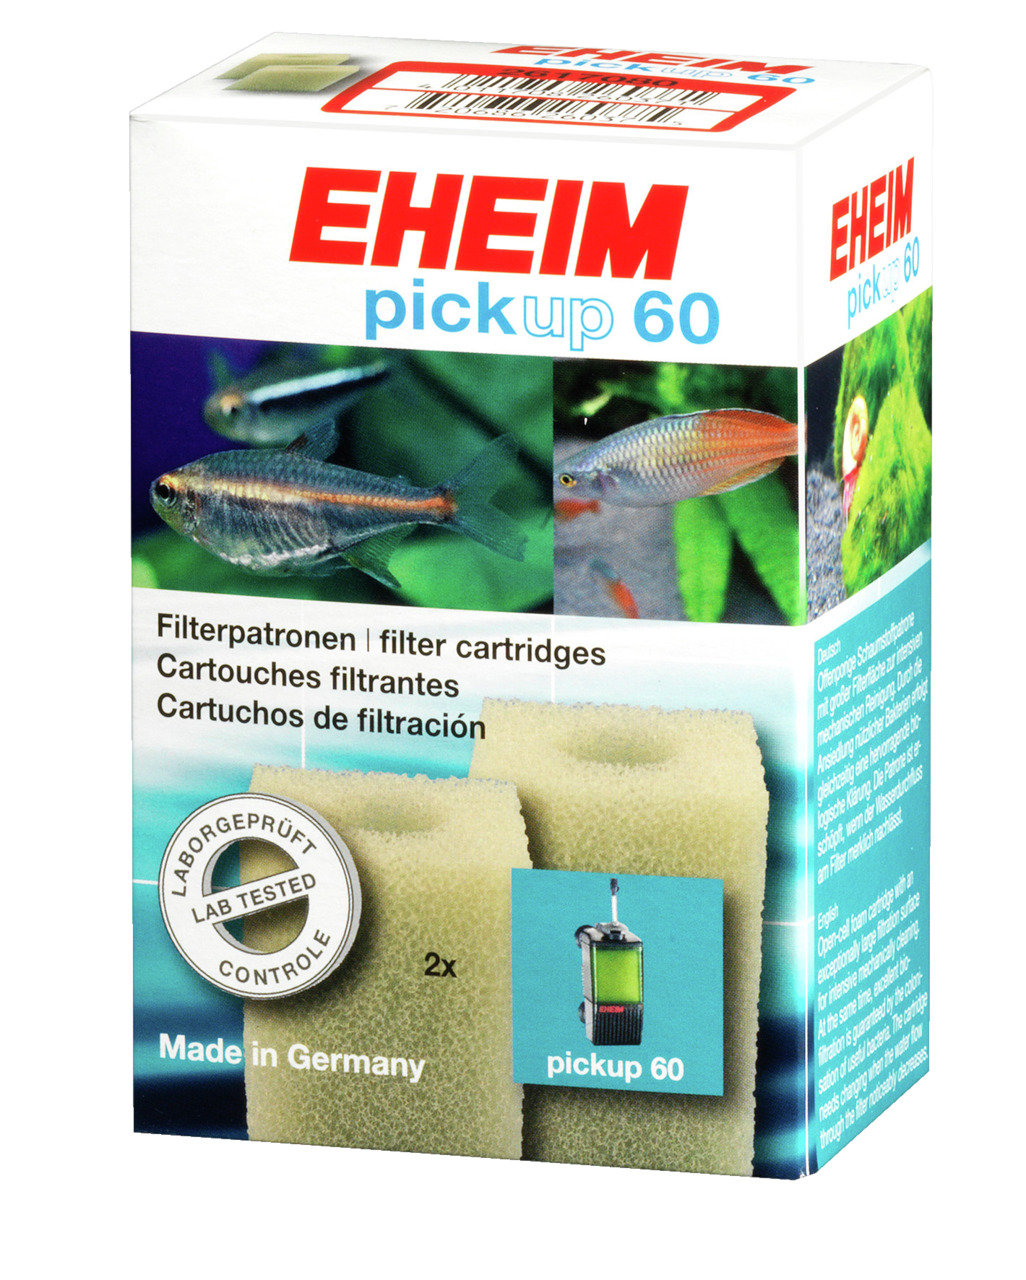 Eheim pickup 60 Filterpatronen Aquarium Filtermedium 2 Stück